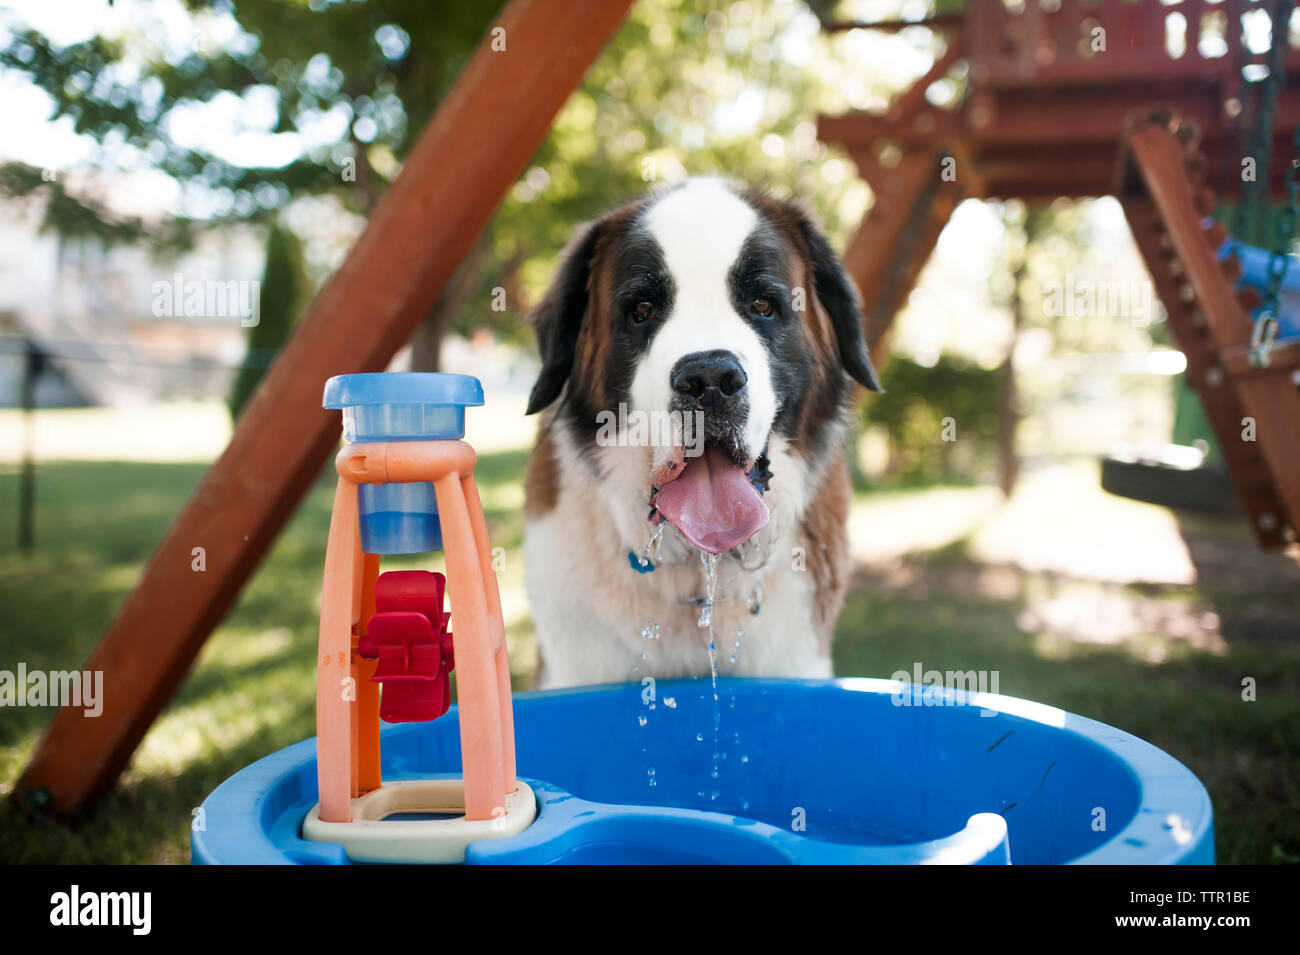 Portrait de chien l'eau potable de récipient dans un jeu pour enfants Banque D'Images